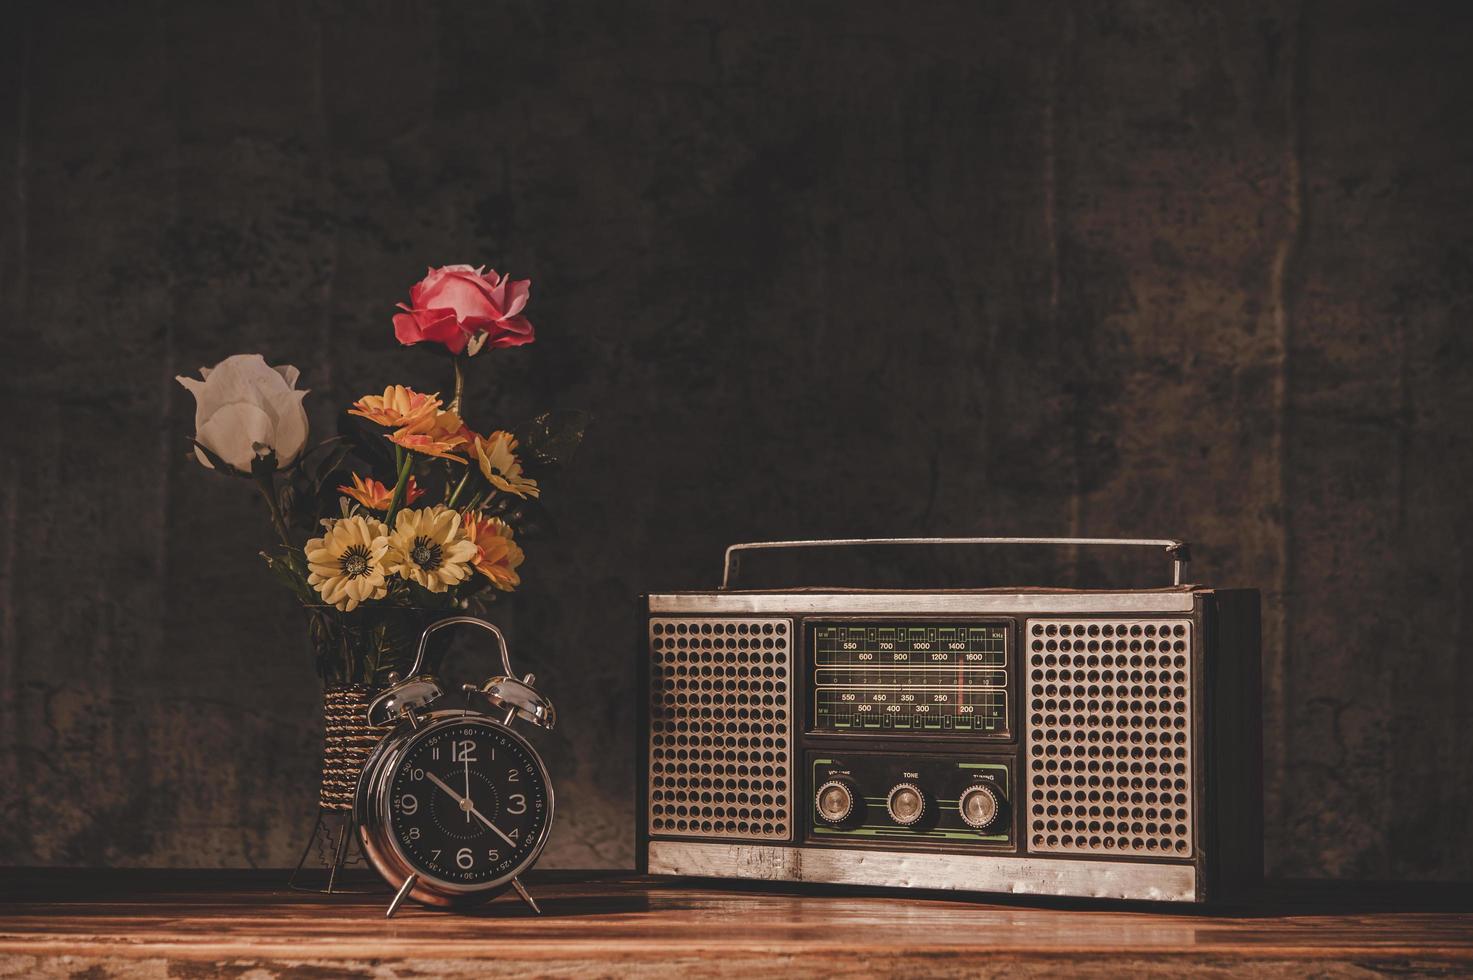 Récepteur radio rétro nature morte avec horloges et vases à fleurs photo